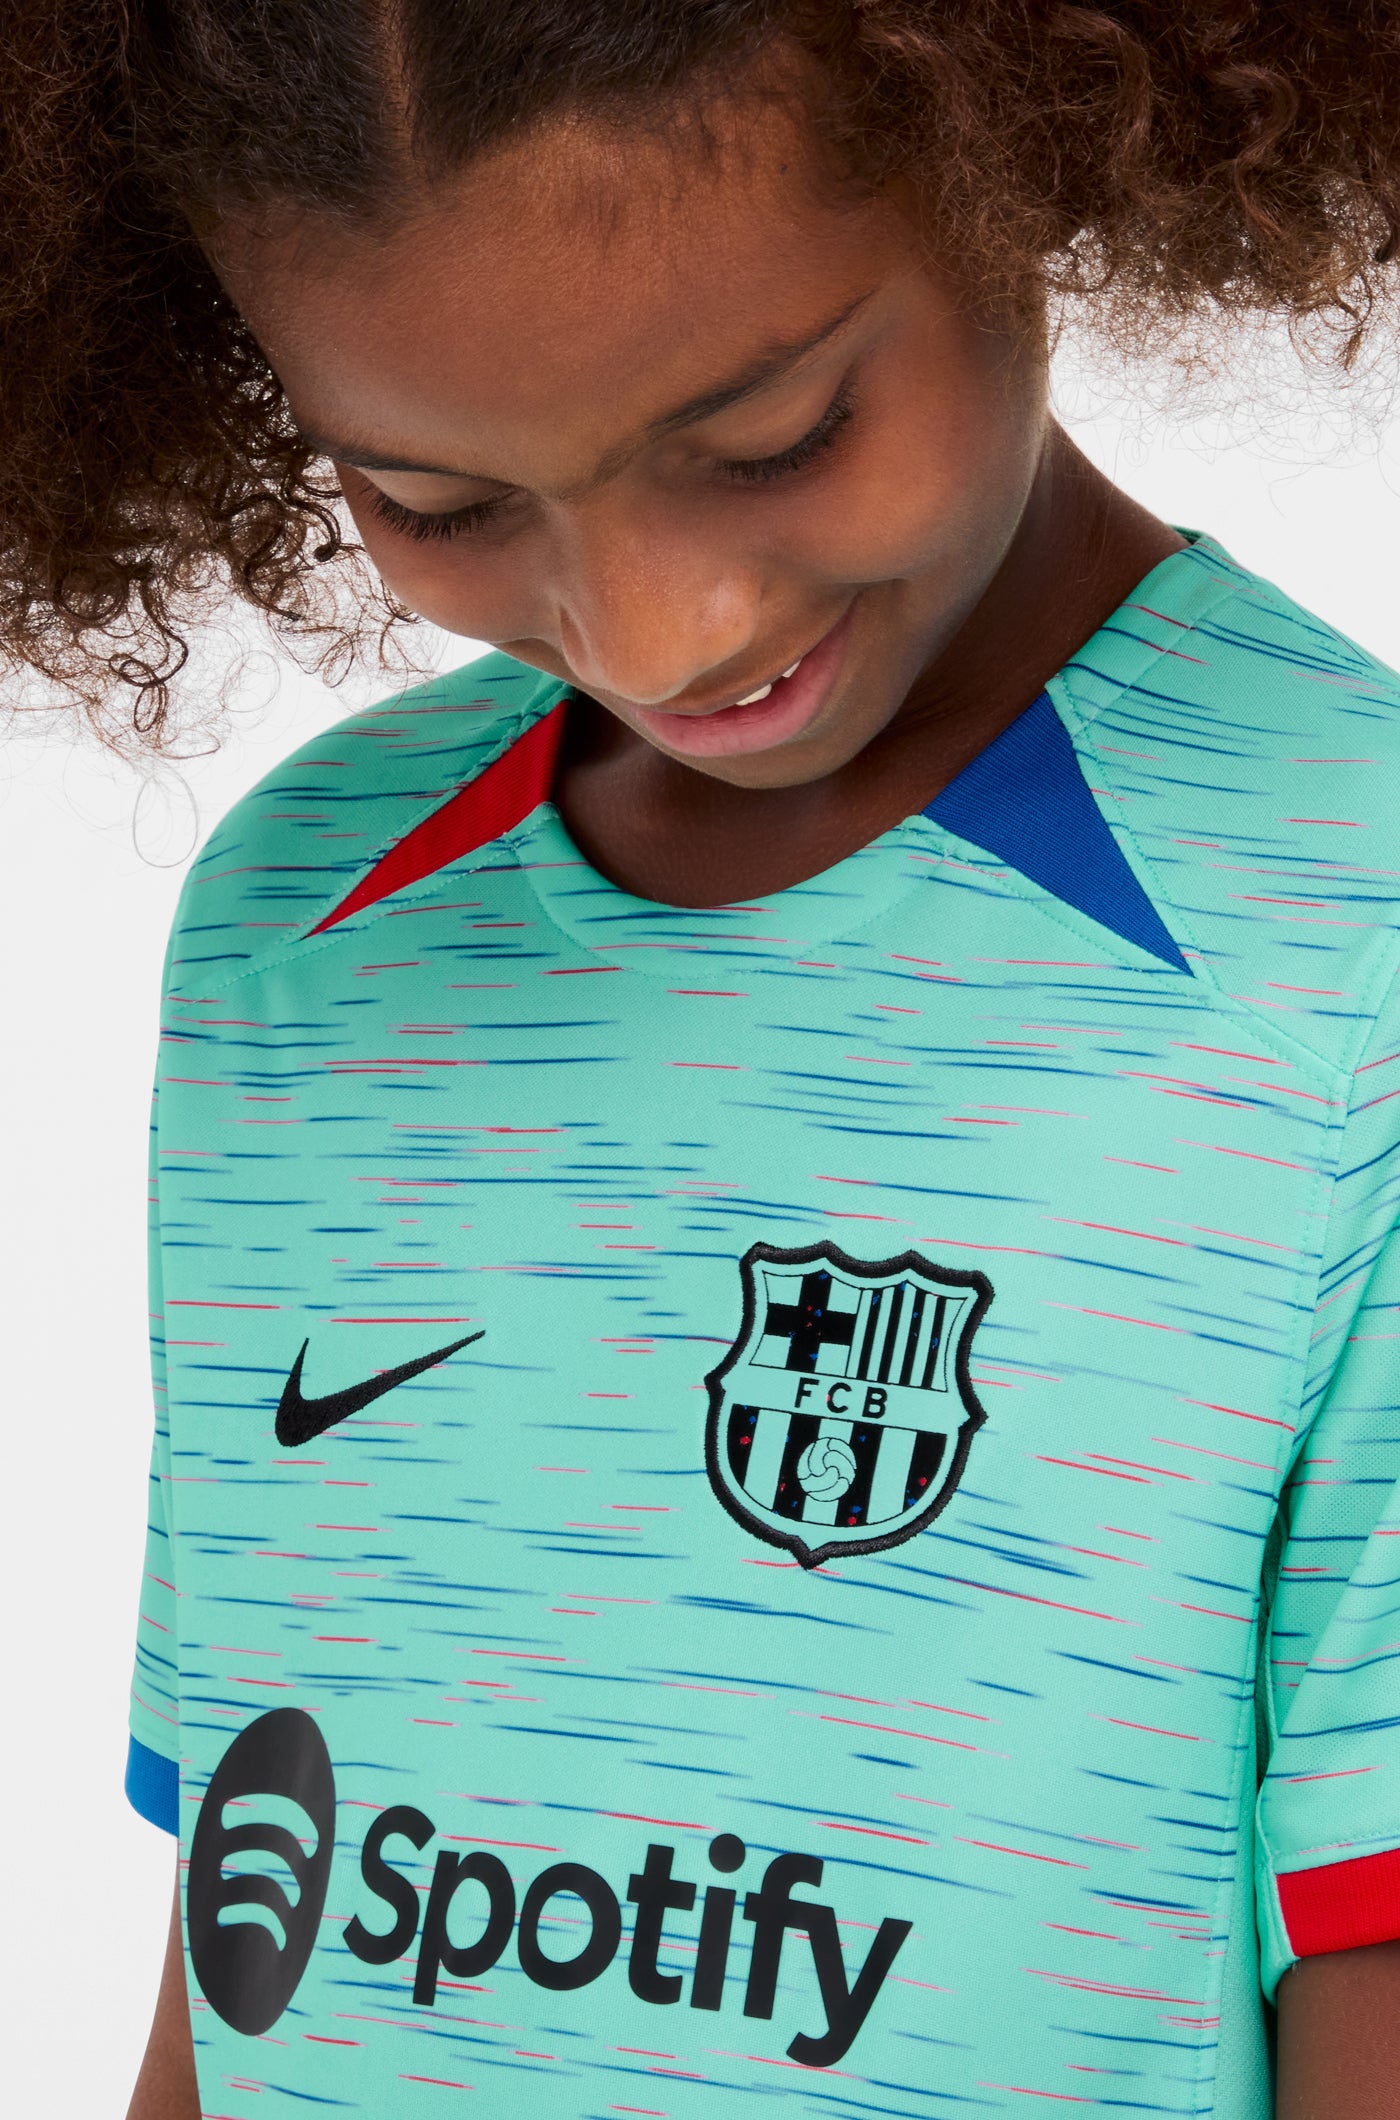 LFP Camiseta tercera equipación FC Barcelona 23/24 - Junior 